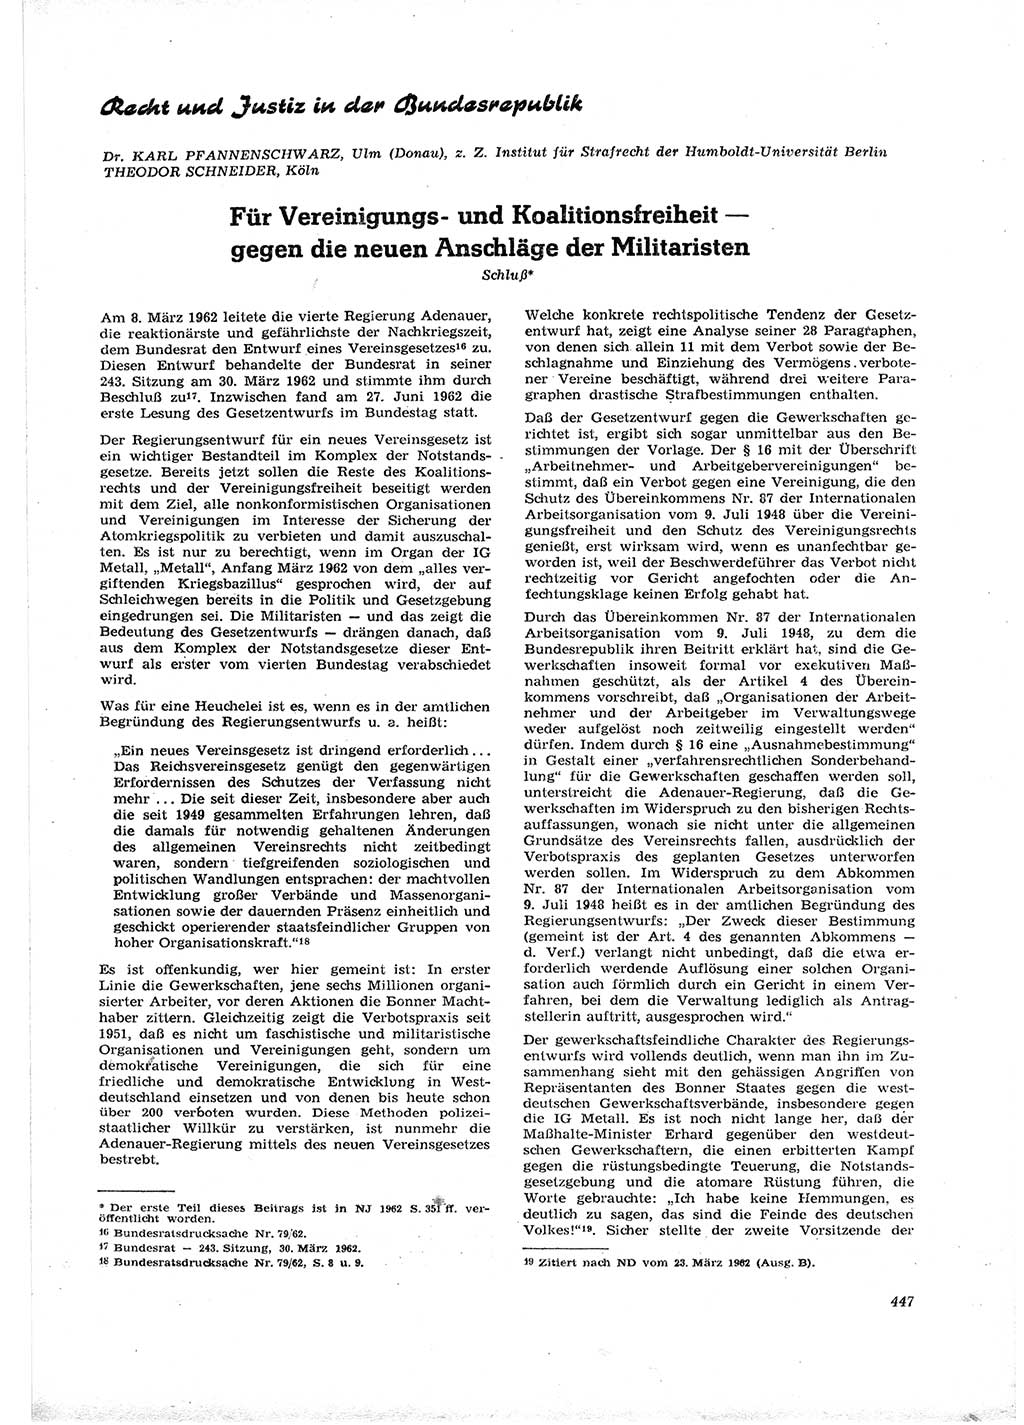 Neue Justiz (NJ), Zeitschrift für Recht und Rechtswissenschaft [Deutsche Demokratische Republik (DDR)], 16. Jahrgang 1962, Seite 447 (NJ DDR 1962, S. 447)